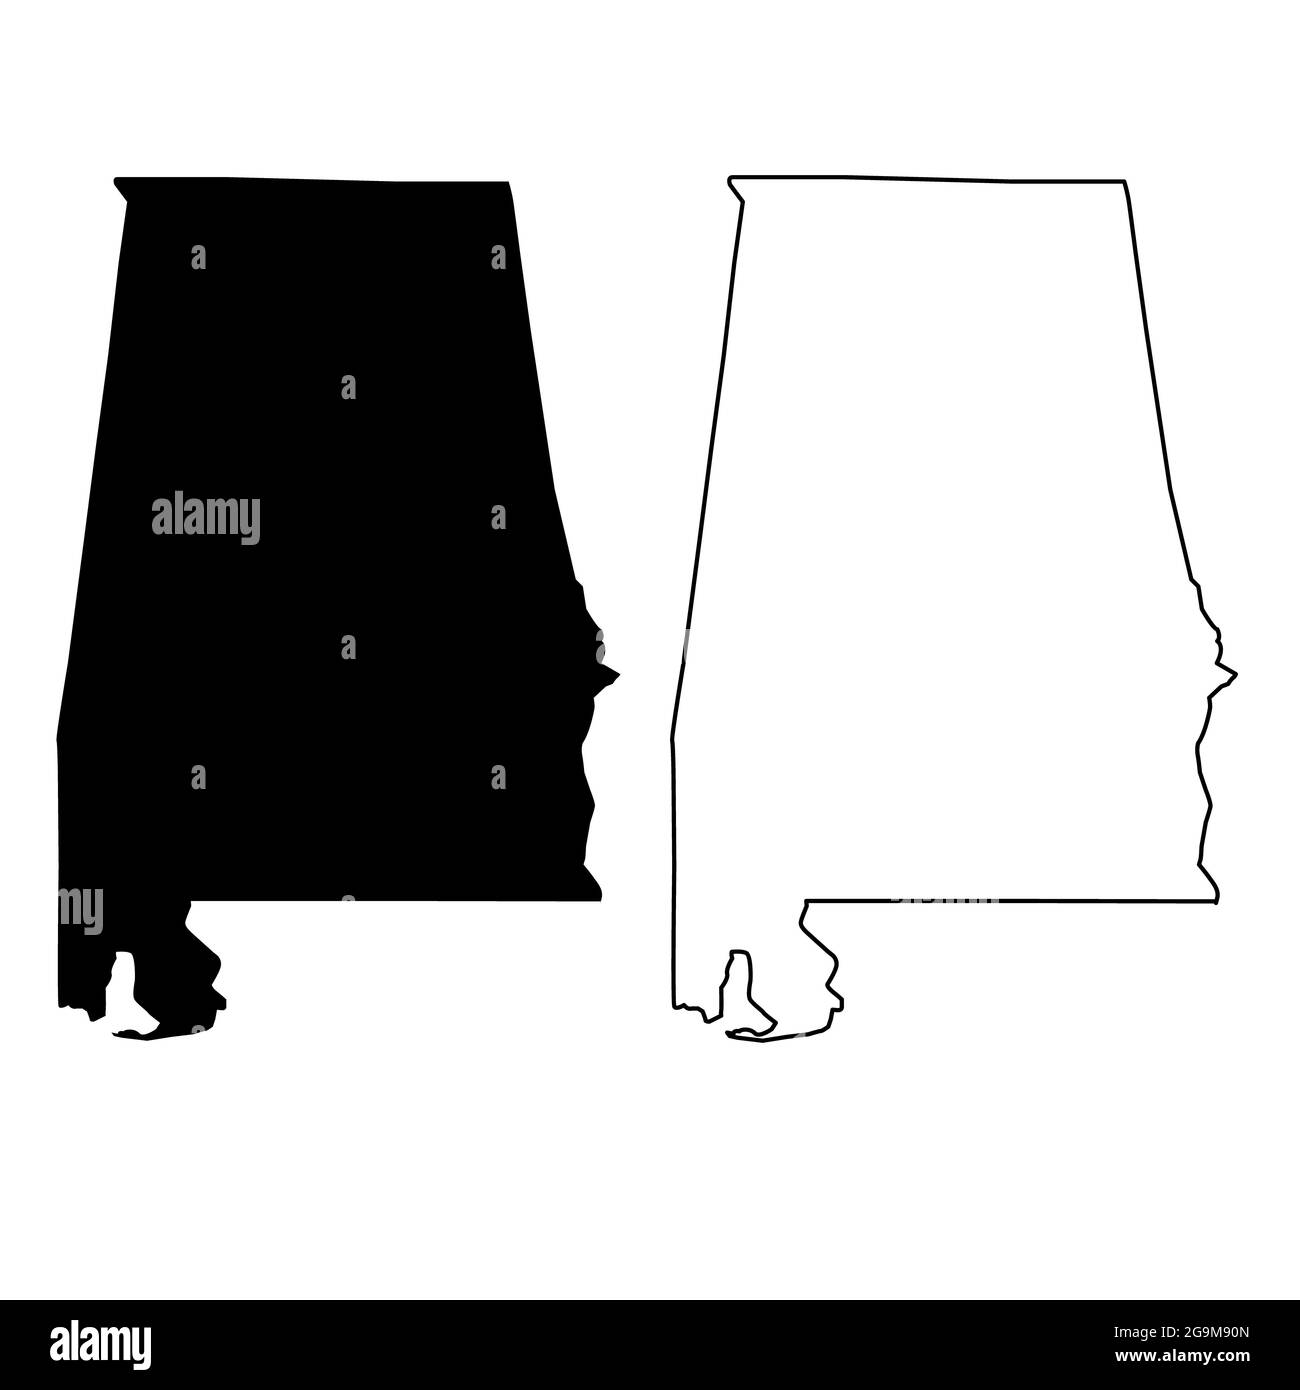 Alabama-Kartensymbol auf weißem Hintergrund. Alabama State-Schild. Karte schwarz umrandet Staat USA. Flacher Stil. Stockfoto